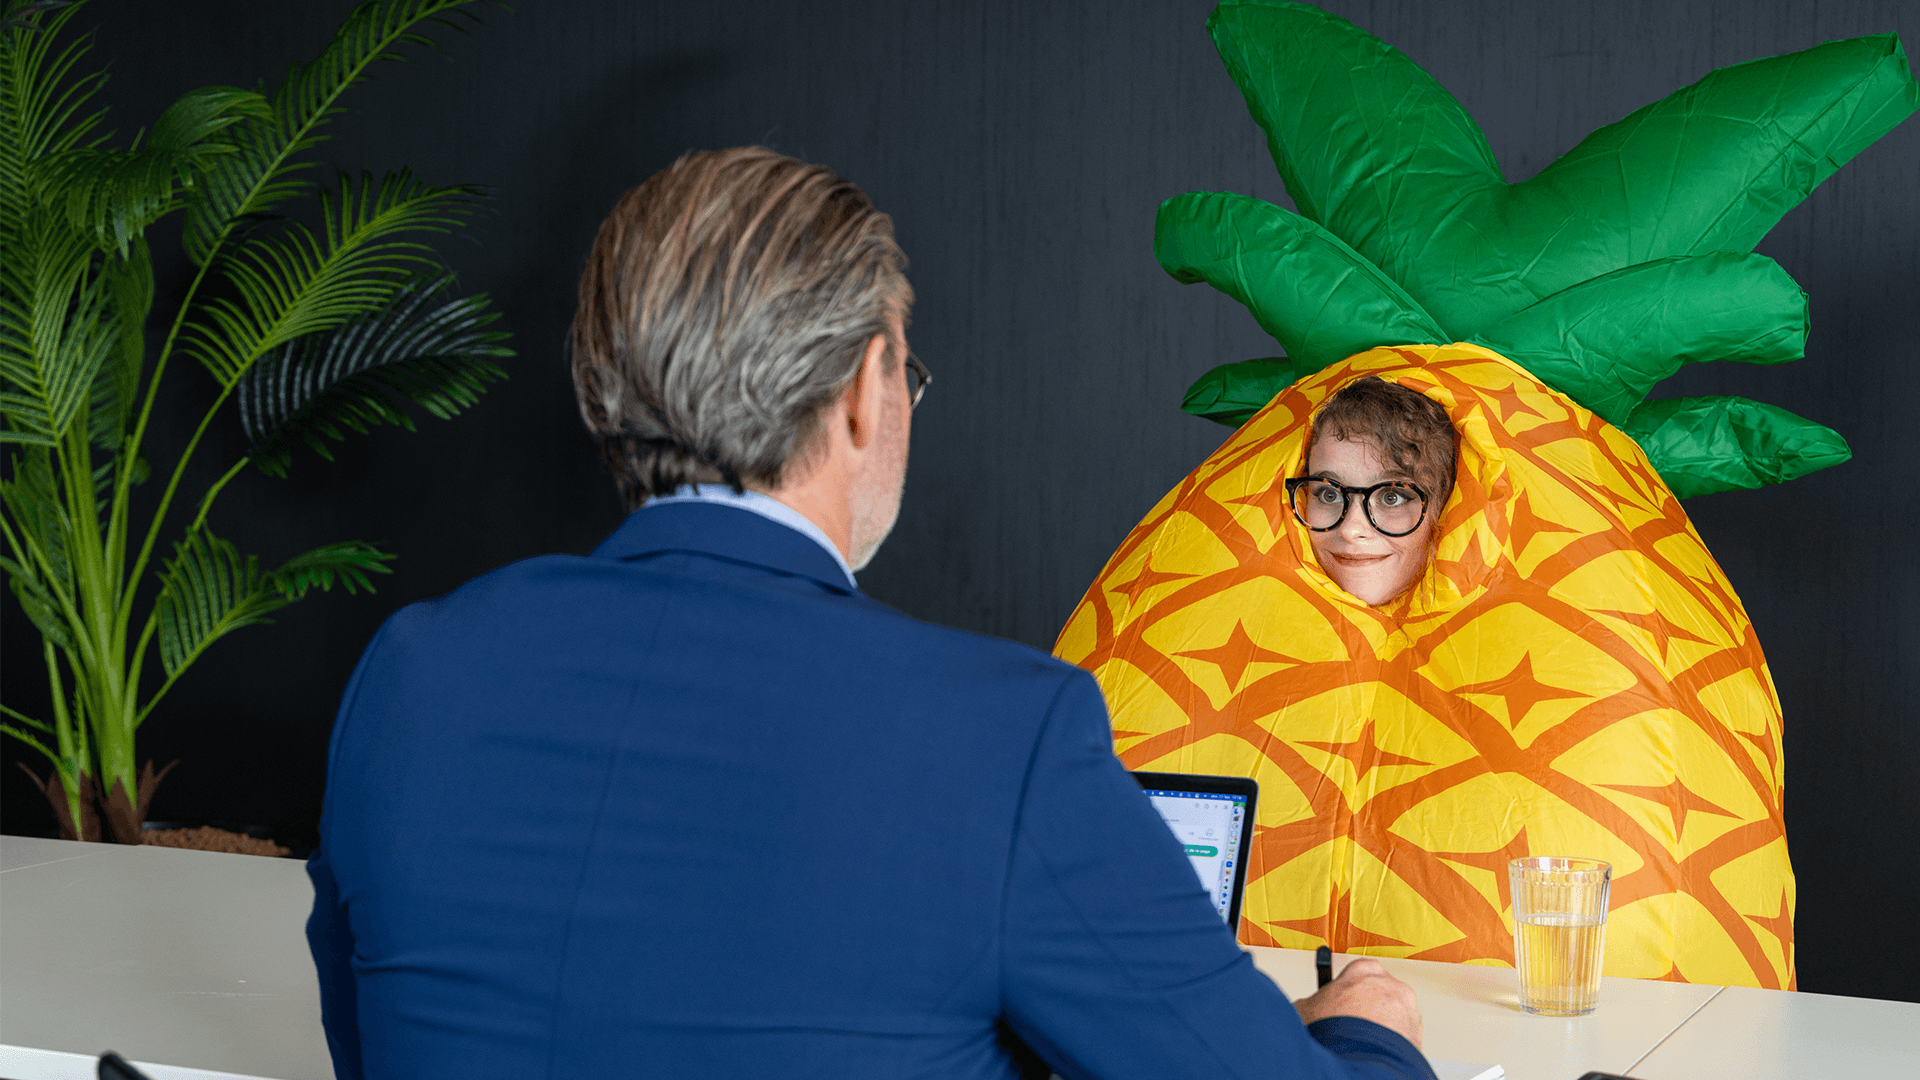 Entretien avec une personne portant un costume en forme d'ananas